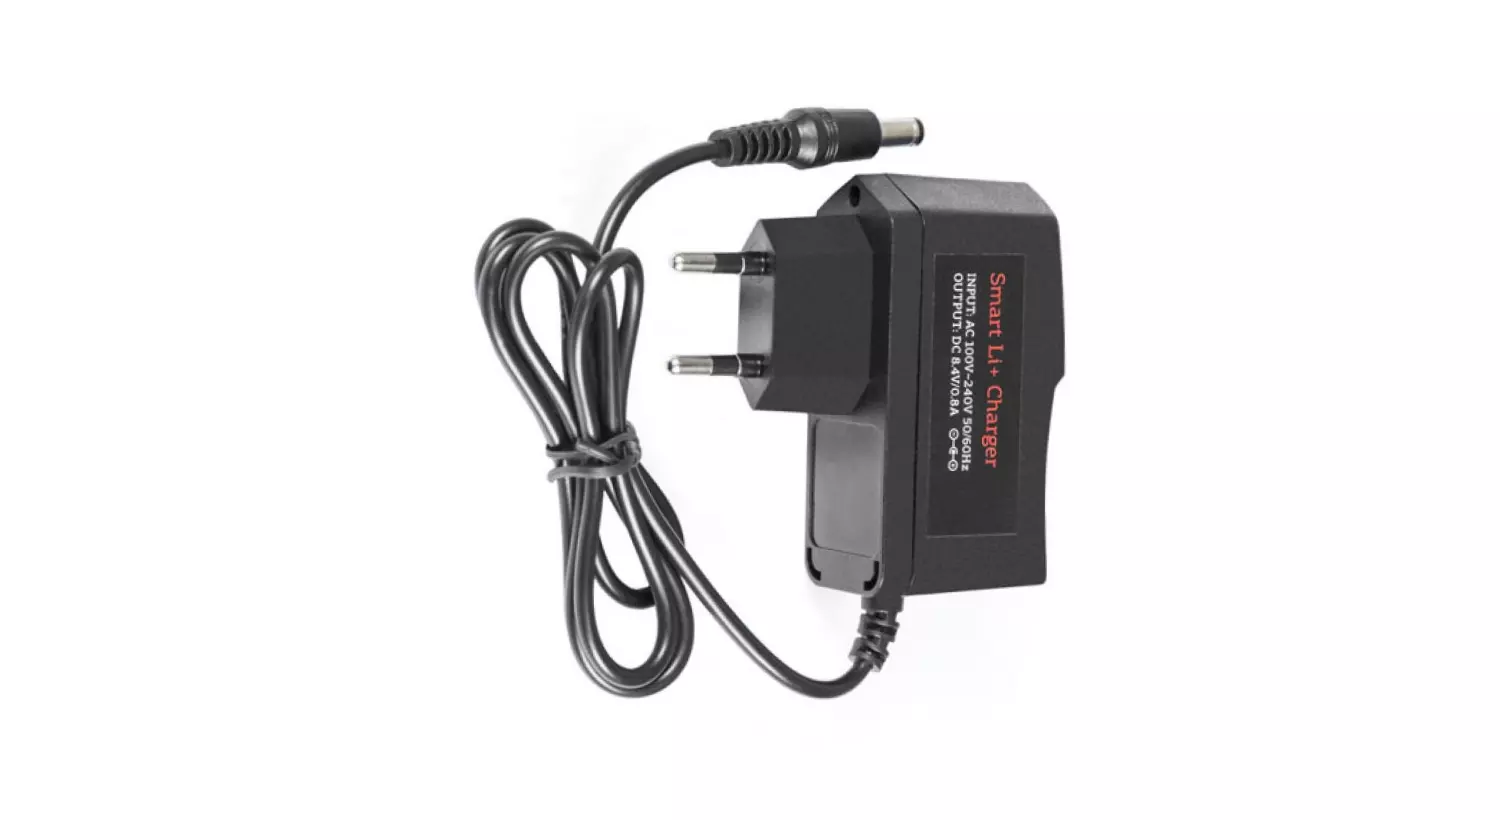 Smart Li + charger for laser tag 